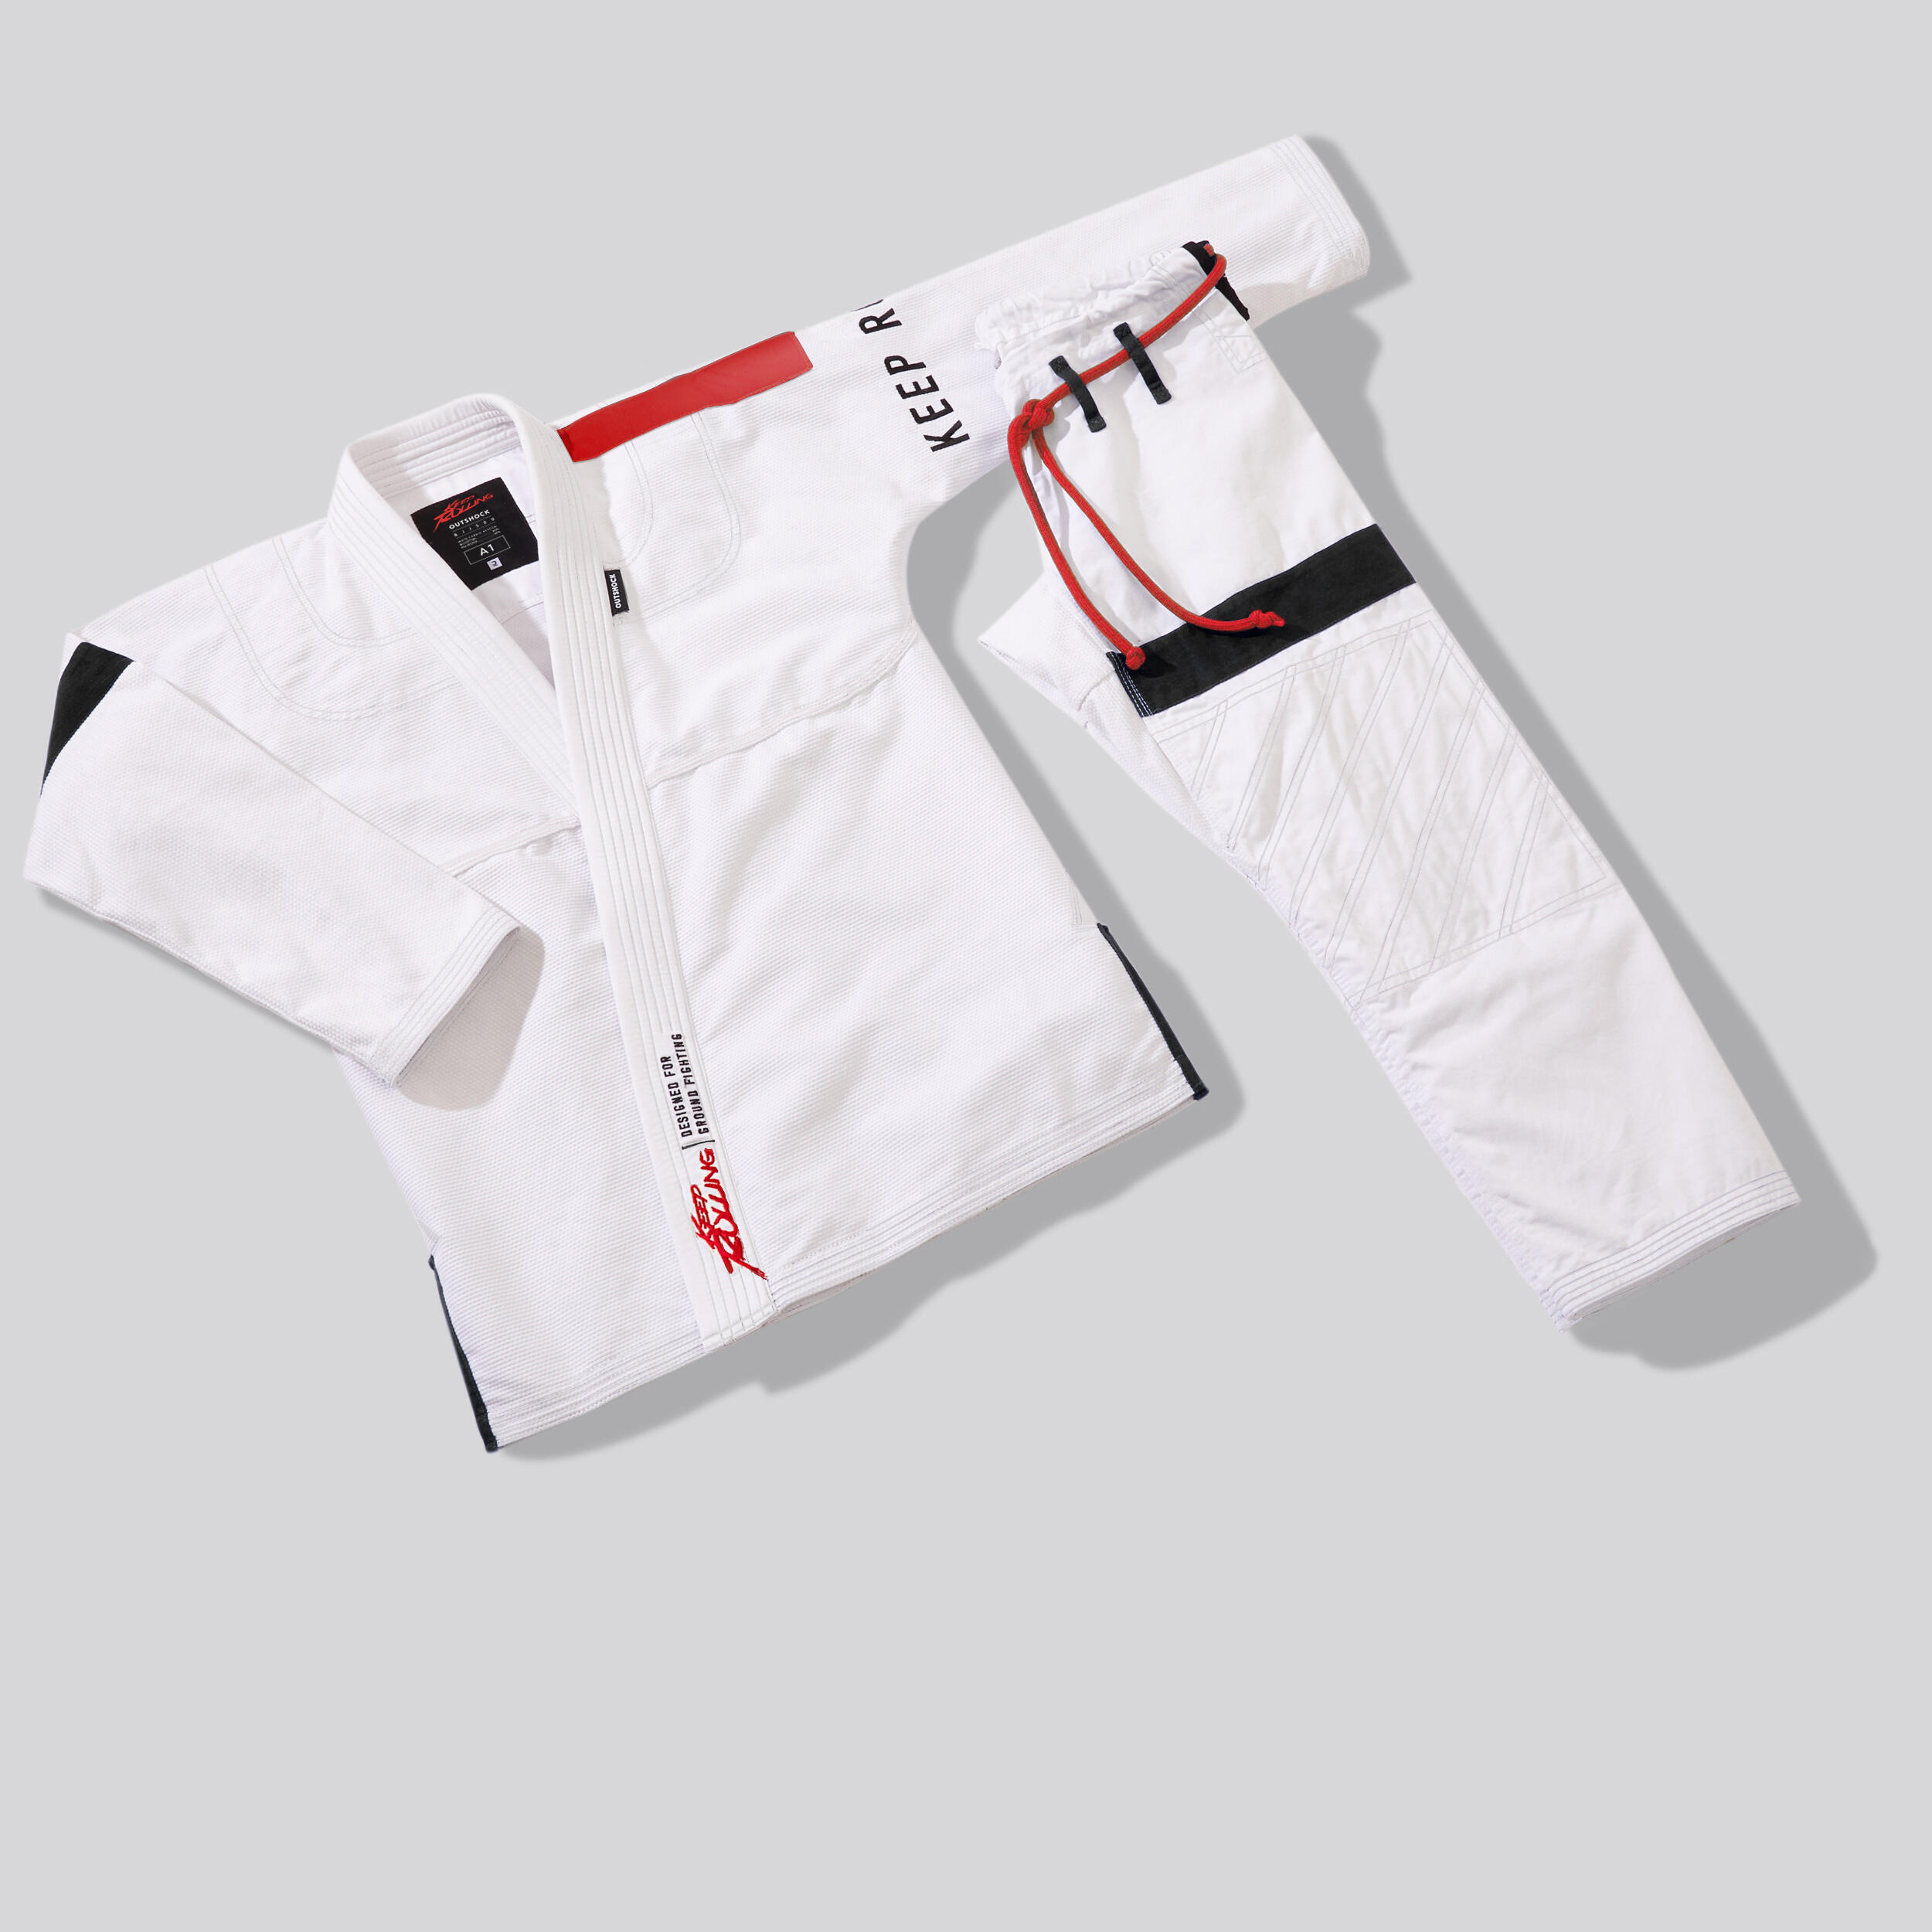 500 Brazilian Jiu-Jitsu Uniform - White 8/9